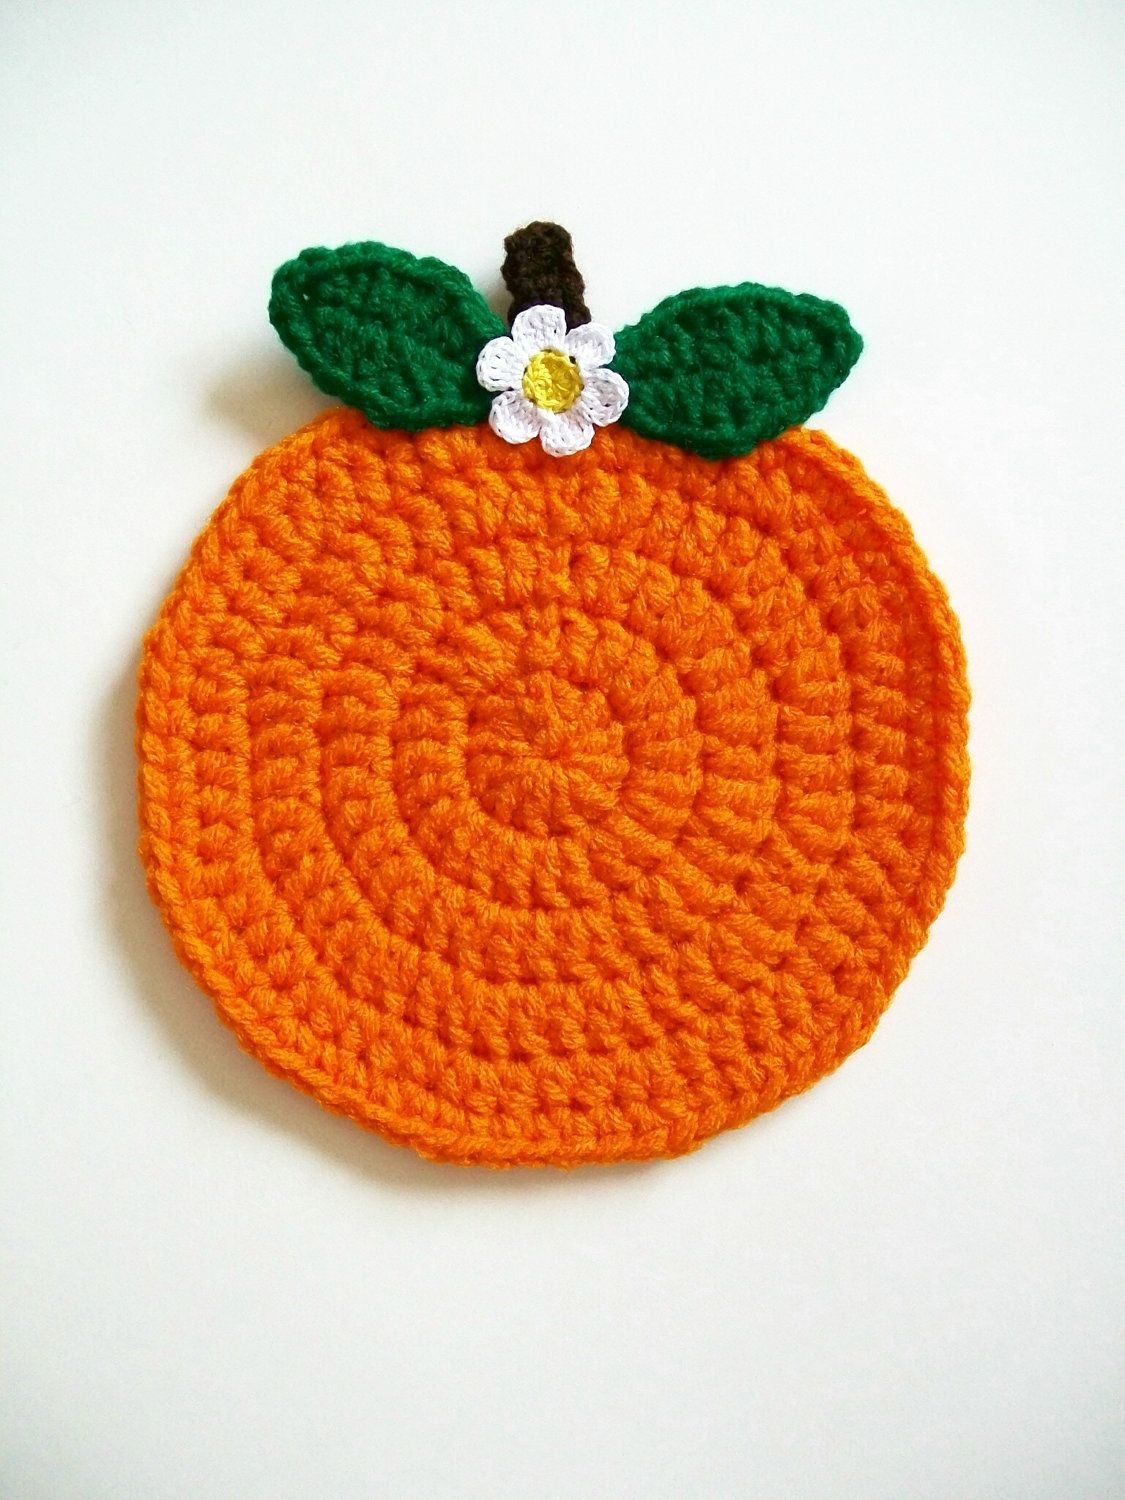 Crochet Apple Potholder Pattern Crochet Orange Fruit Pot Holder Hot Pad Potholder Handmade Kitchen